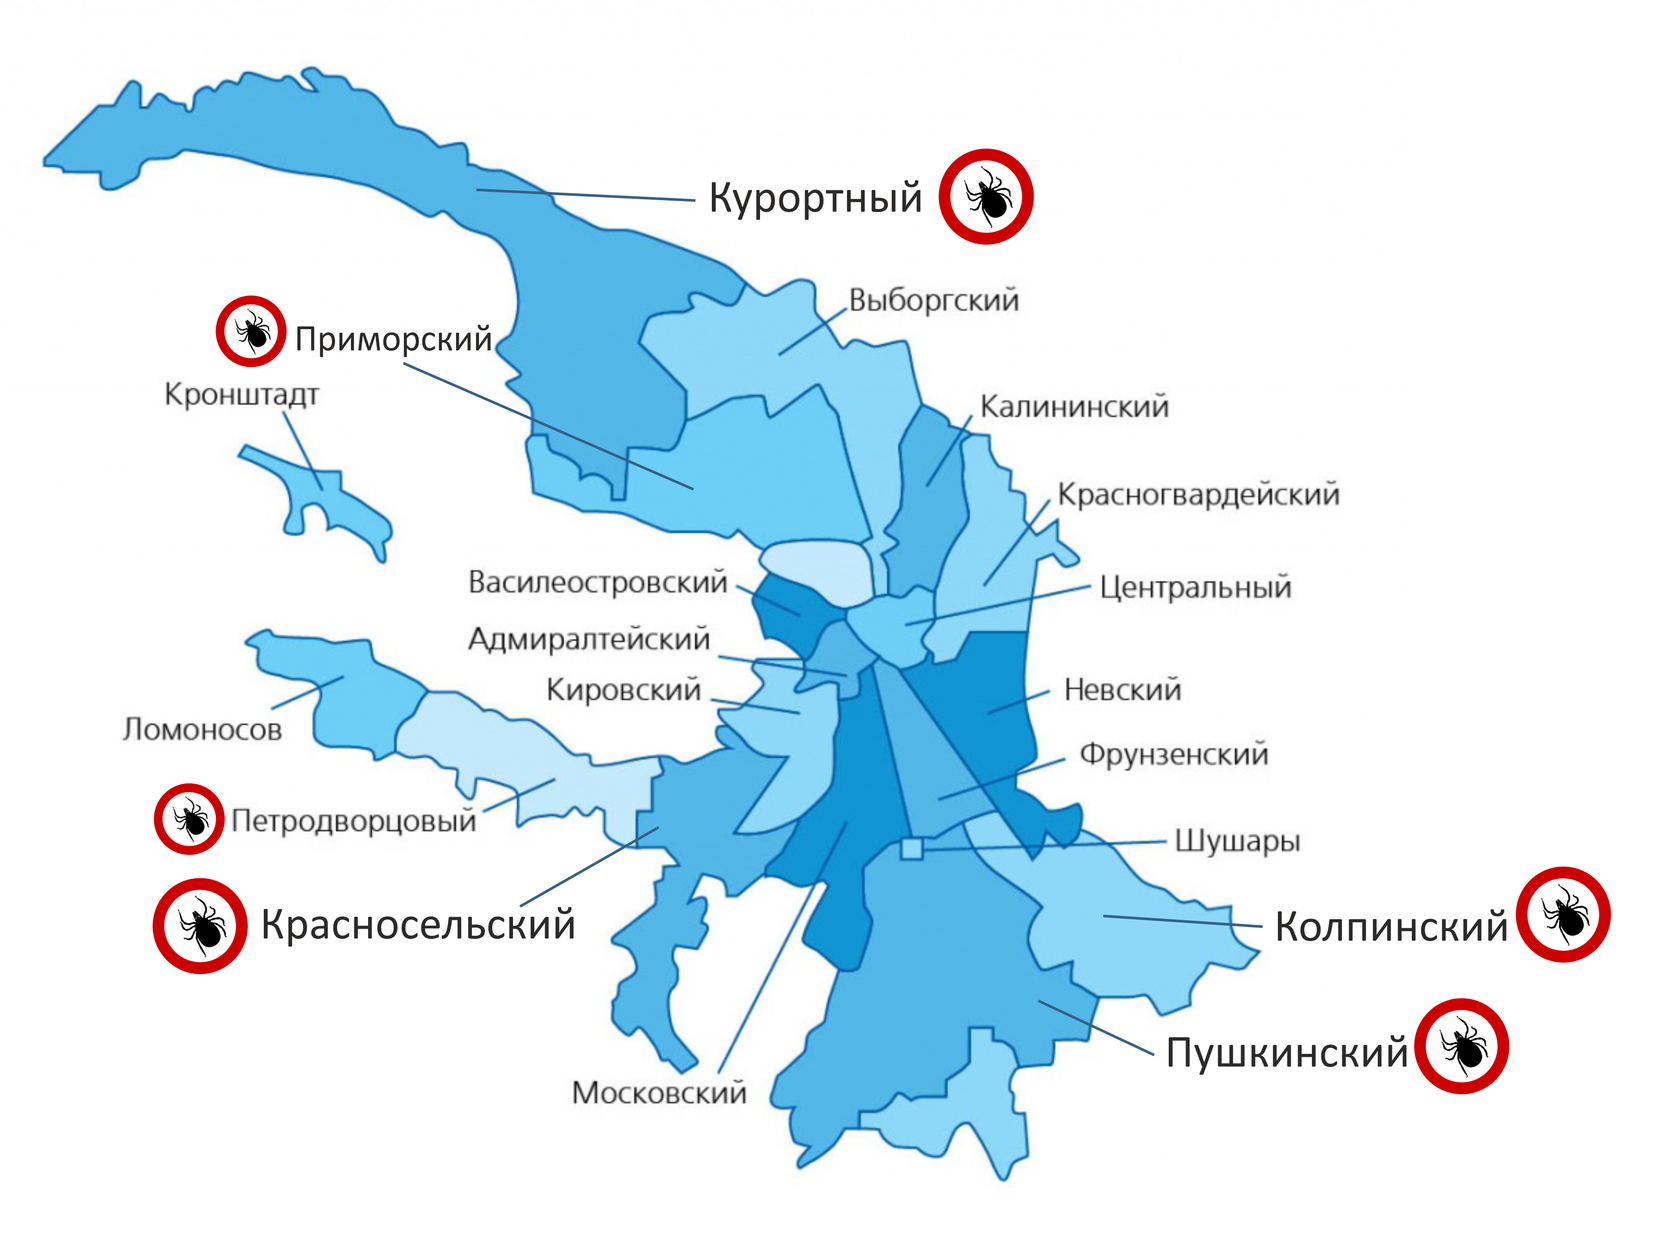 Сайты районов спб. Районы СПБ на карте. Карта Санкт-Петербурга по районам. Схема Петербурга по районам. Карта районов СПБ С границами.